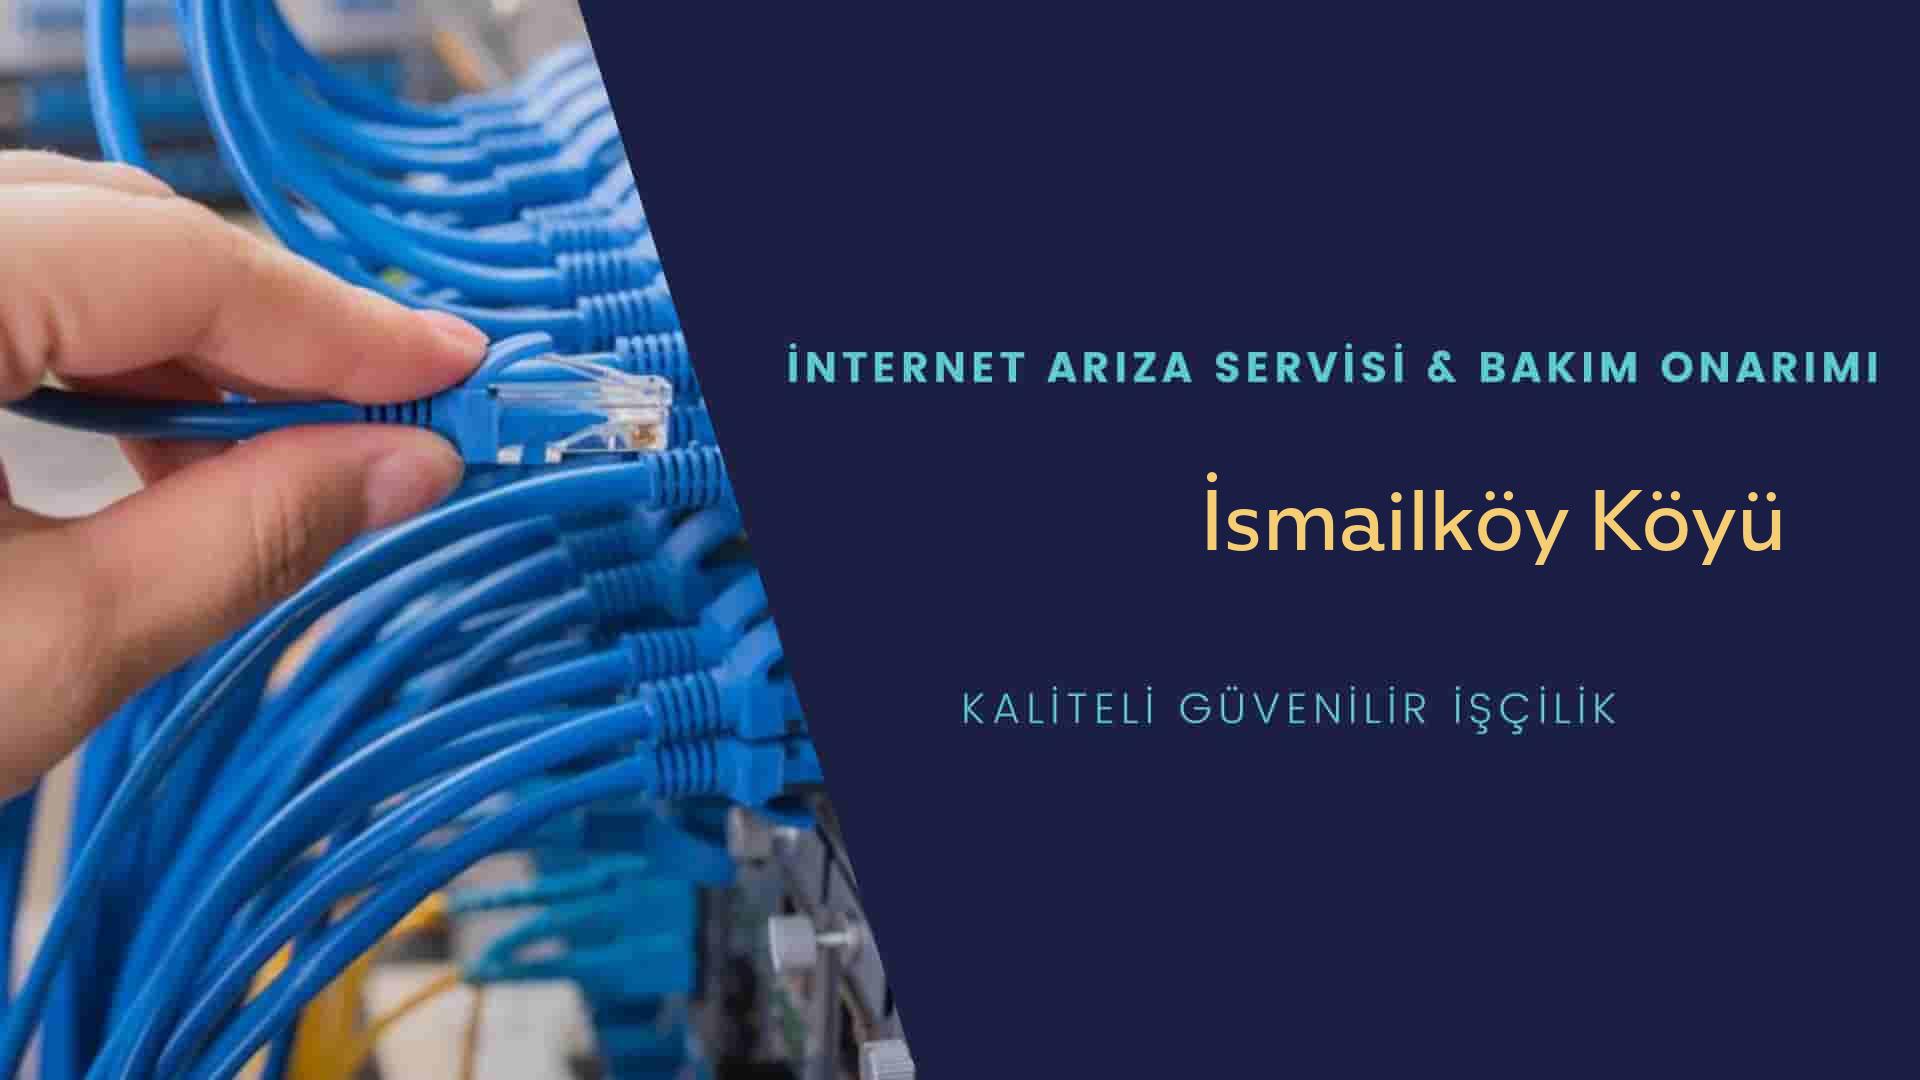 İsmailköy Köyü internet kablosu çekimi yapan yerler veya elektrikçiler mi? arıyorsunuz doğru yerdesiniz o zaman sizlere 7/24 yardımcı olacak profesyonel ustalarımız bir telefon kadar yakındır size.